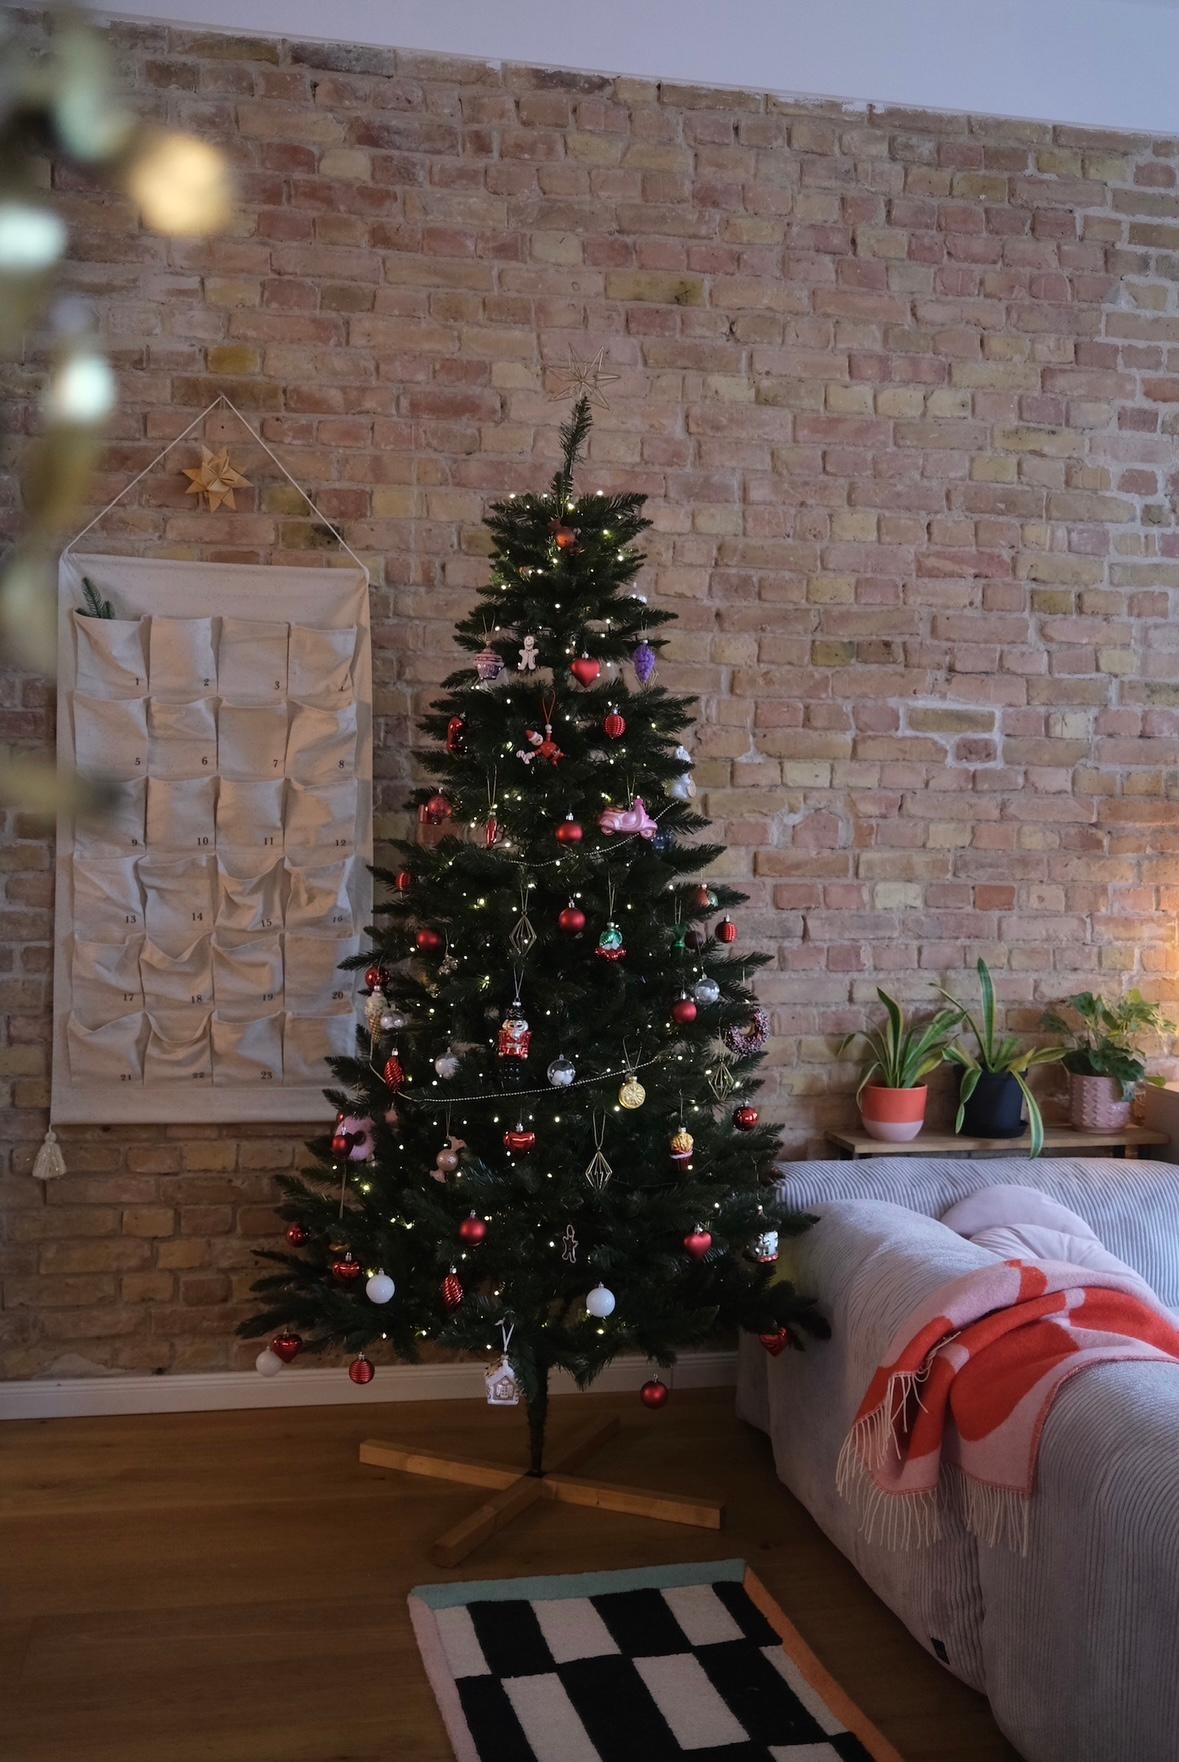 #weihnachtsbaum #adventskalender #altbauwohnung #couchliebt #gemütlich #farbenfroh #backsteinwand